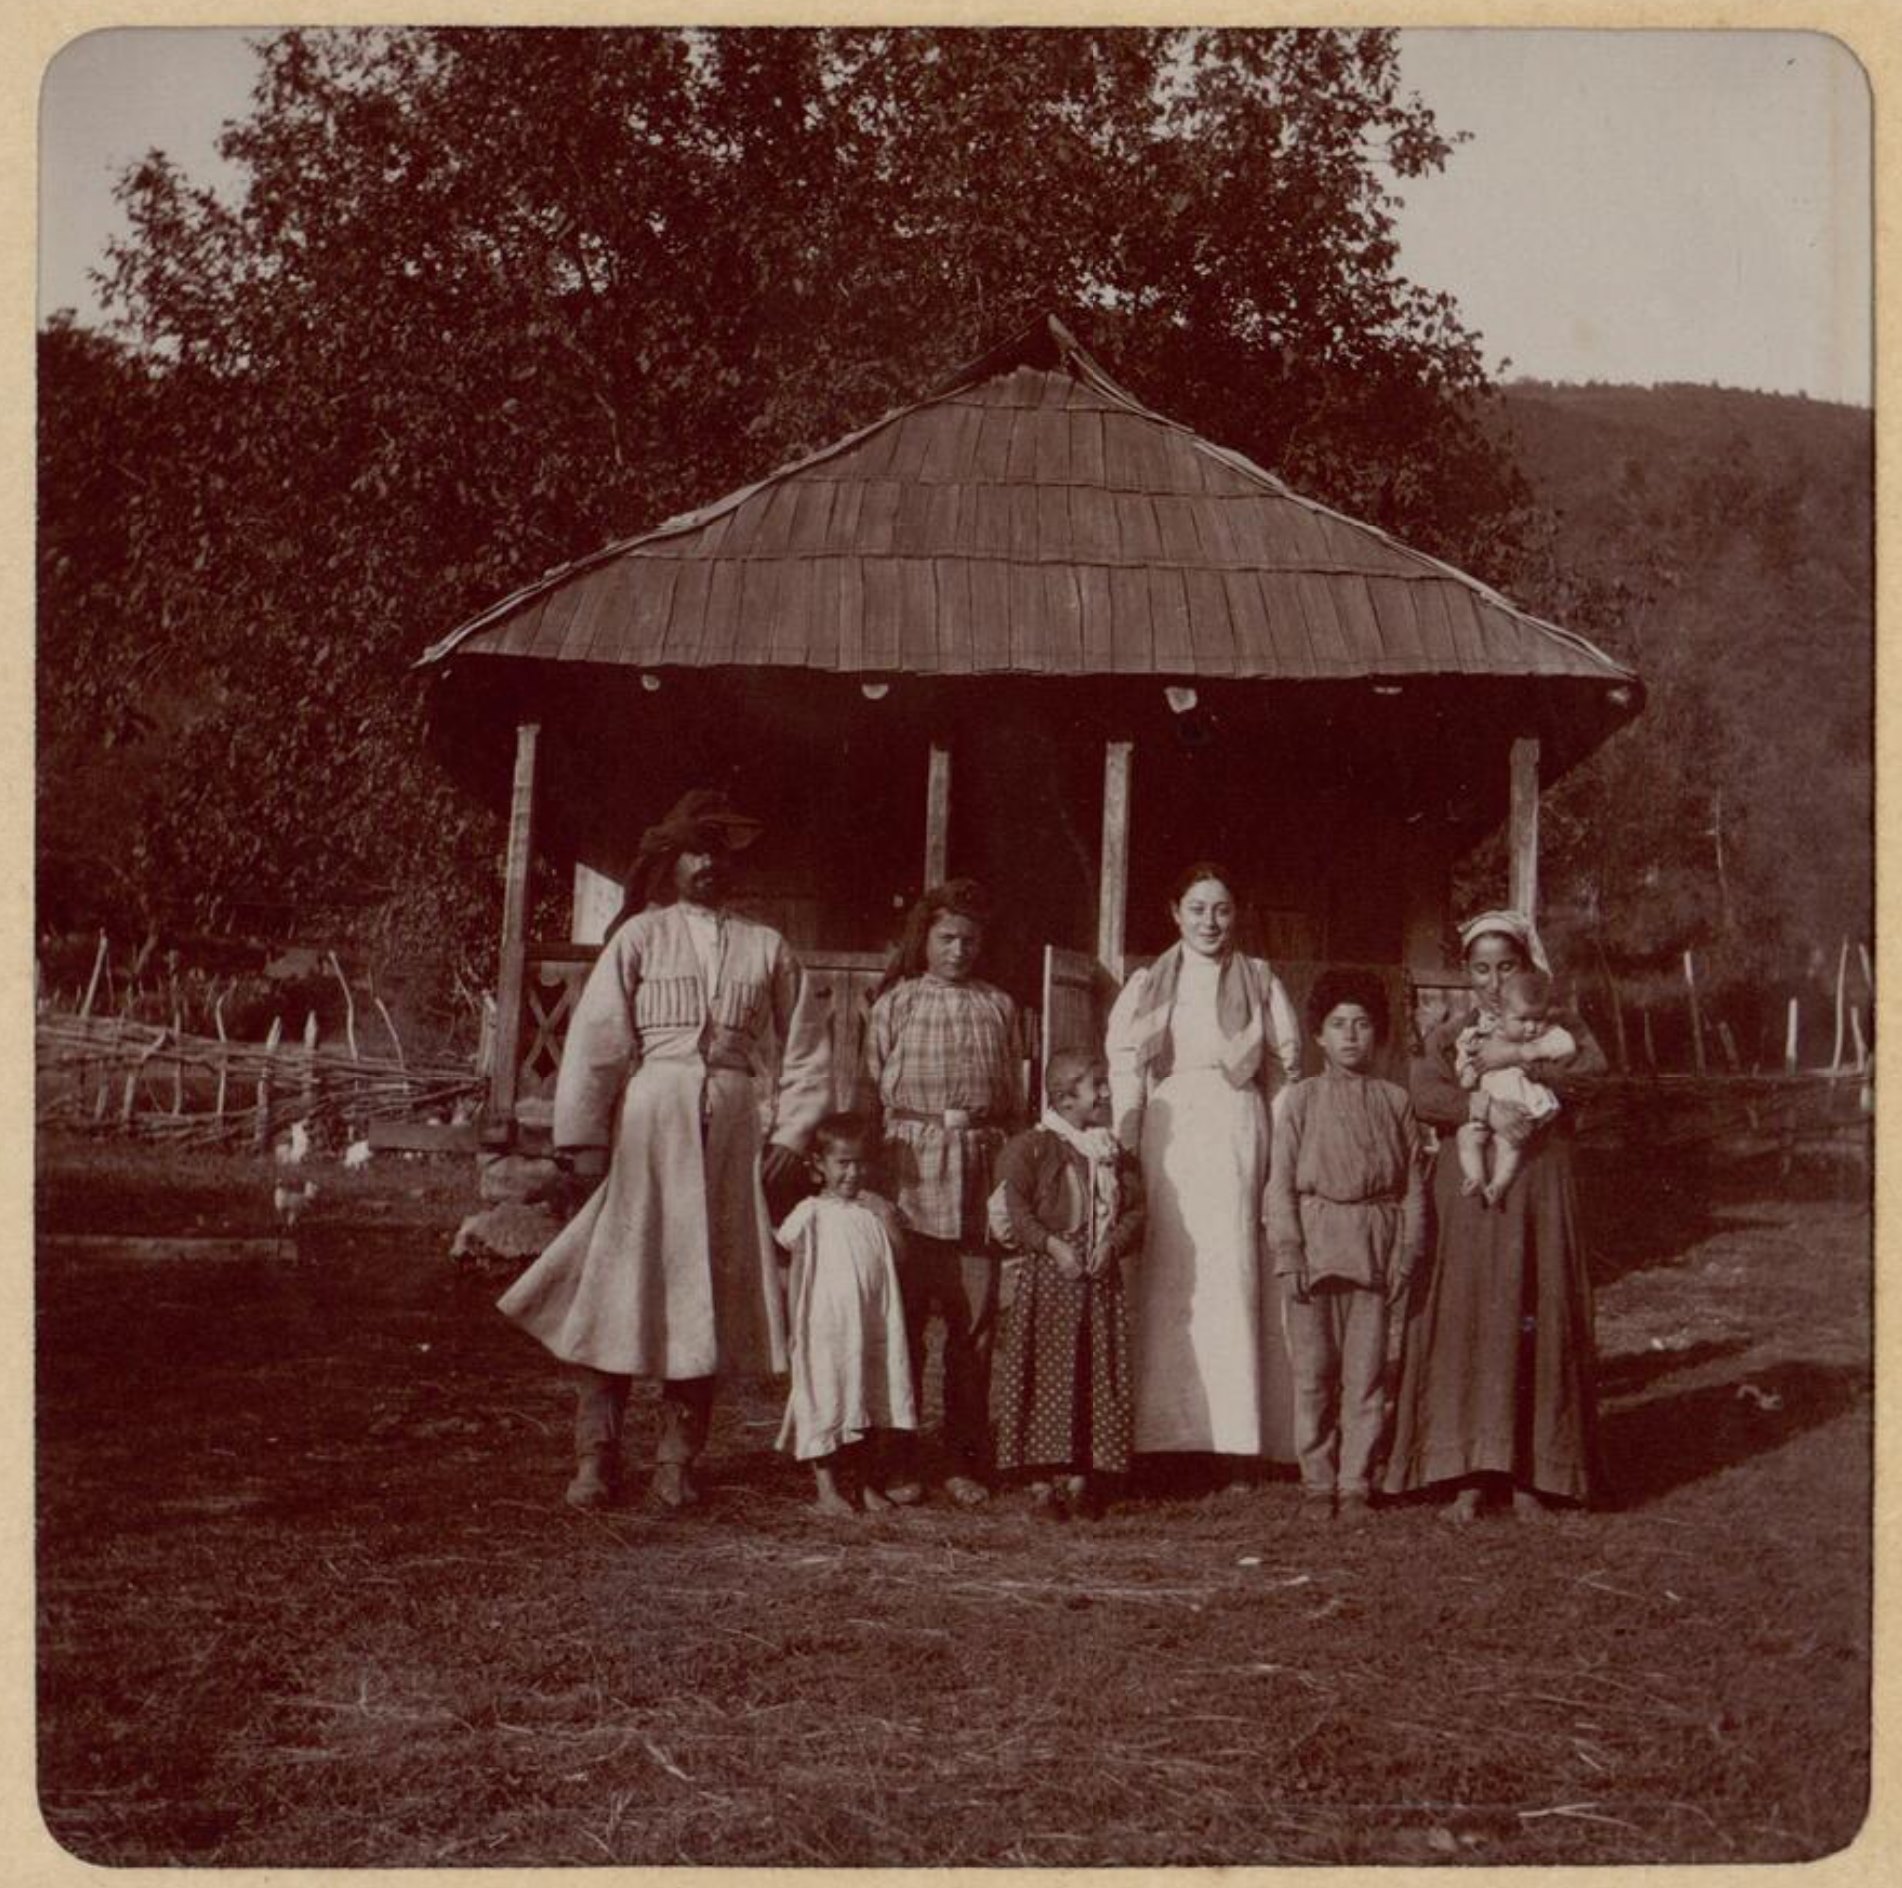 Abkhazia 1903, Photo by Joseph de Baye